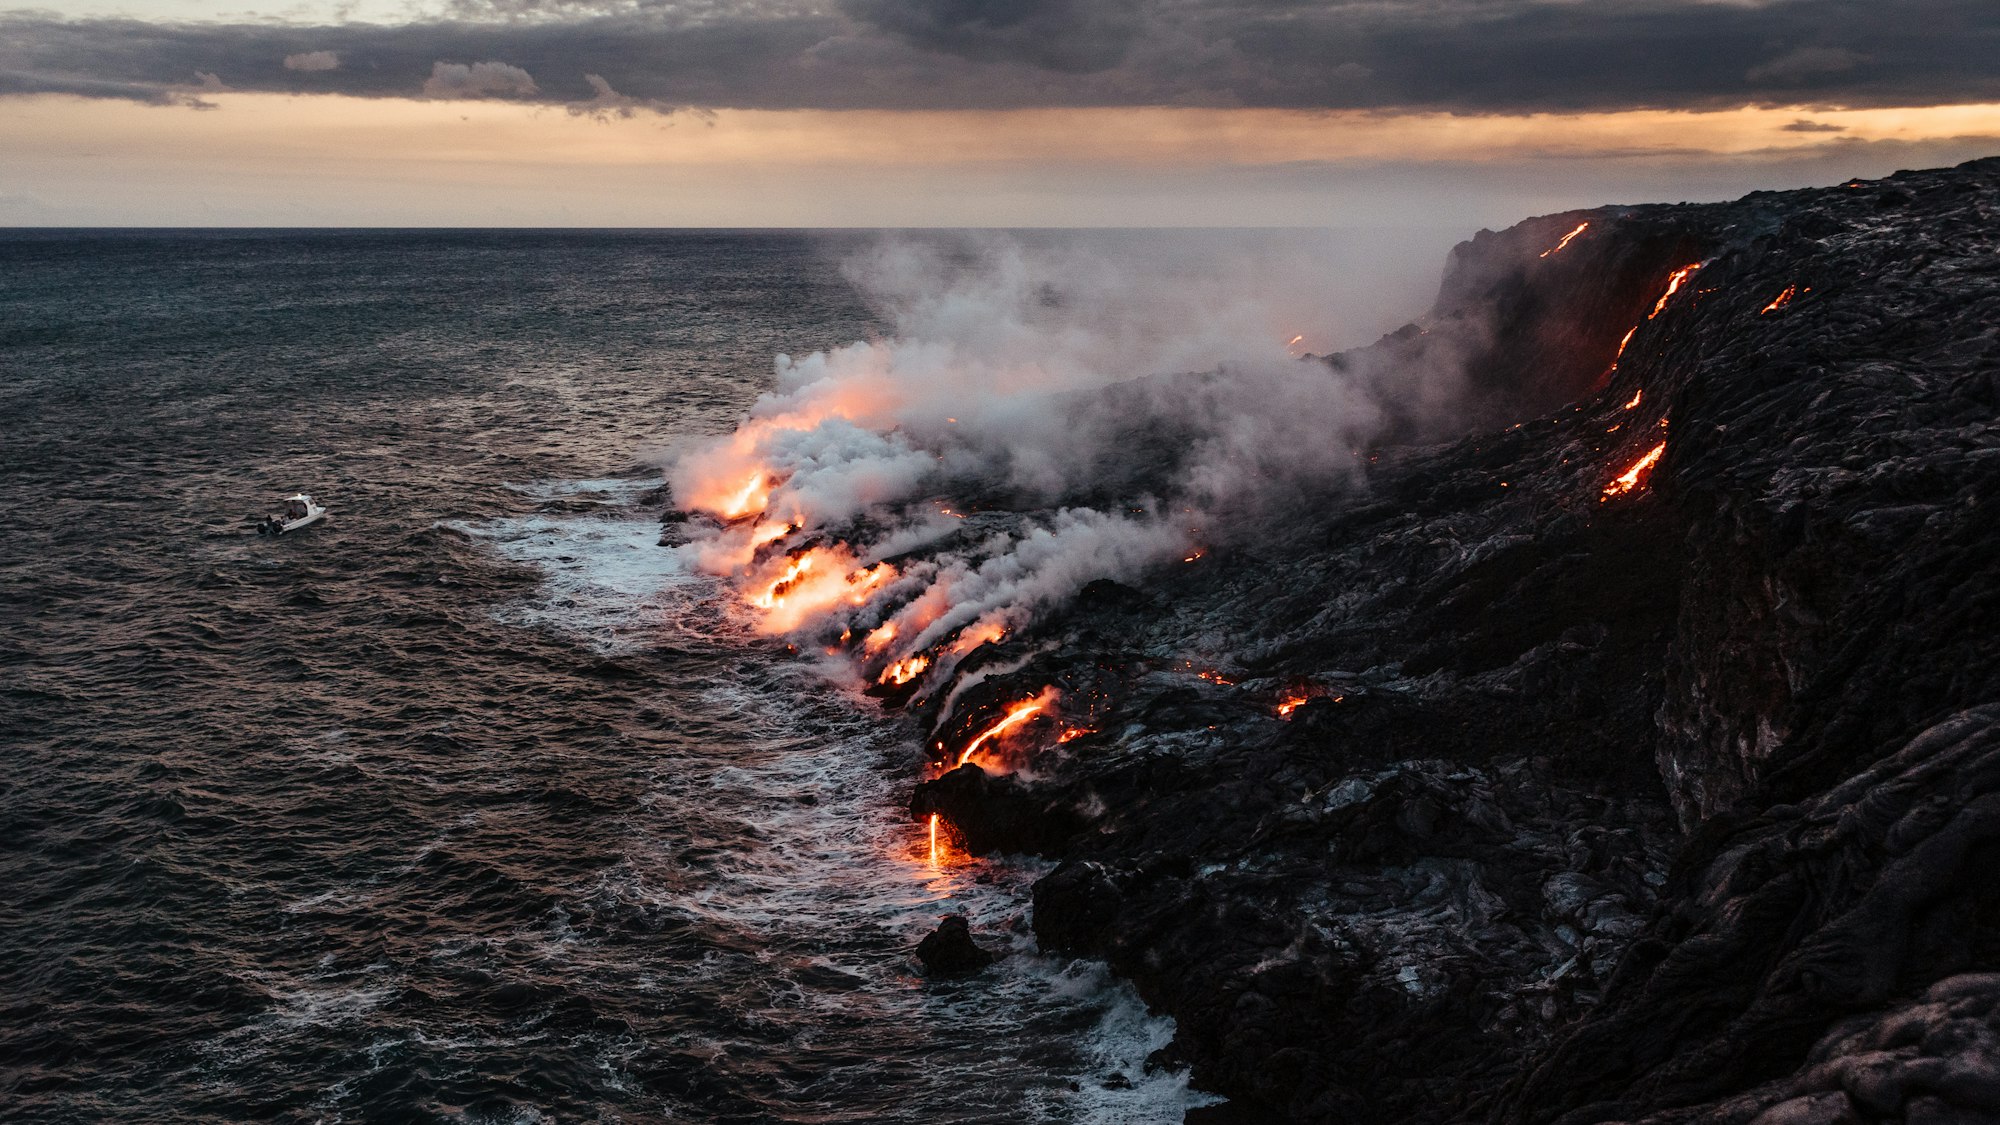 Lava from the Kilauea volcano hitting the ocean.